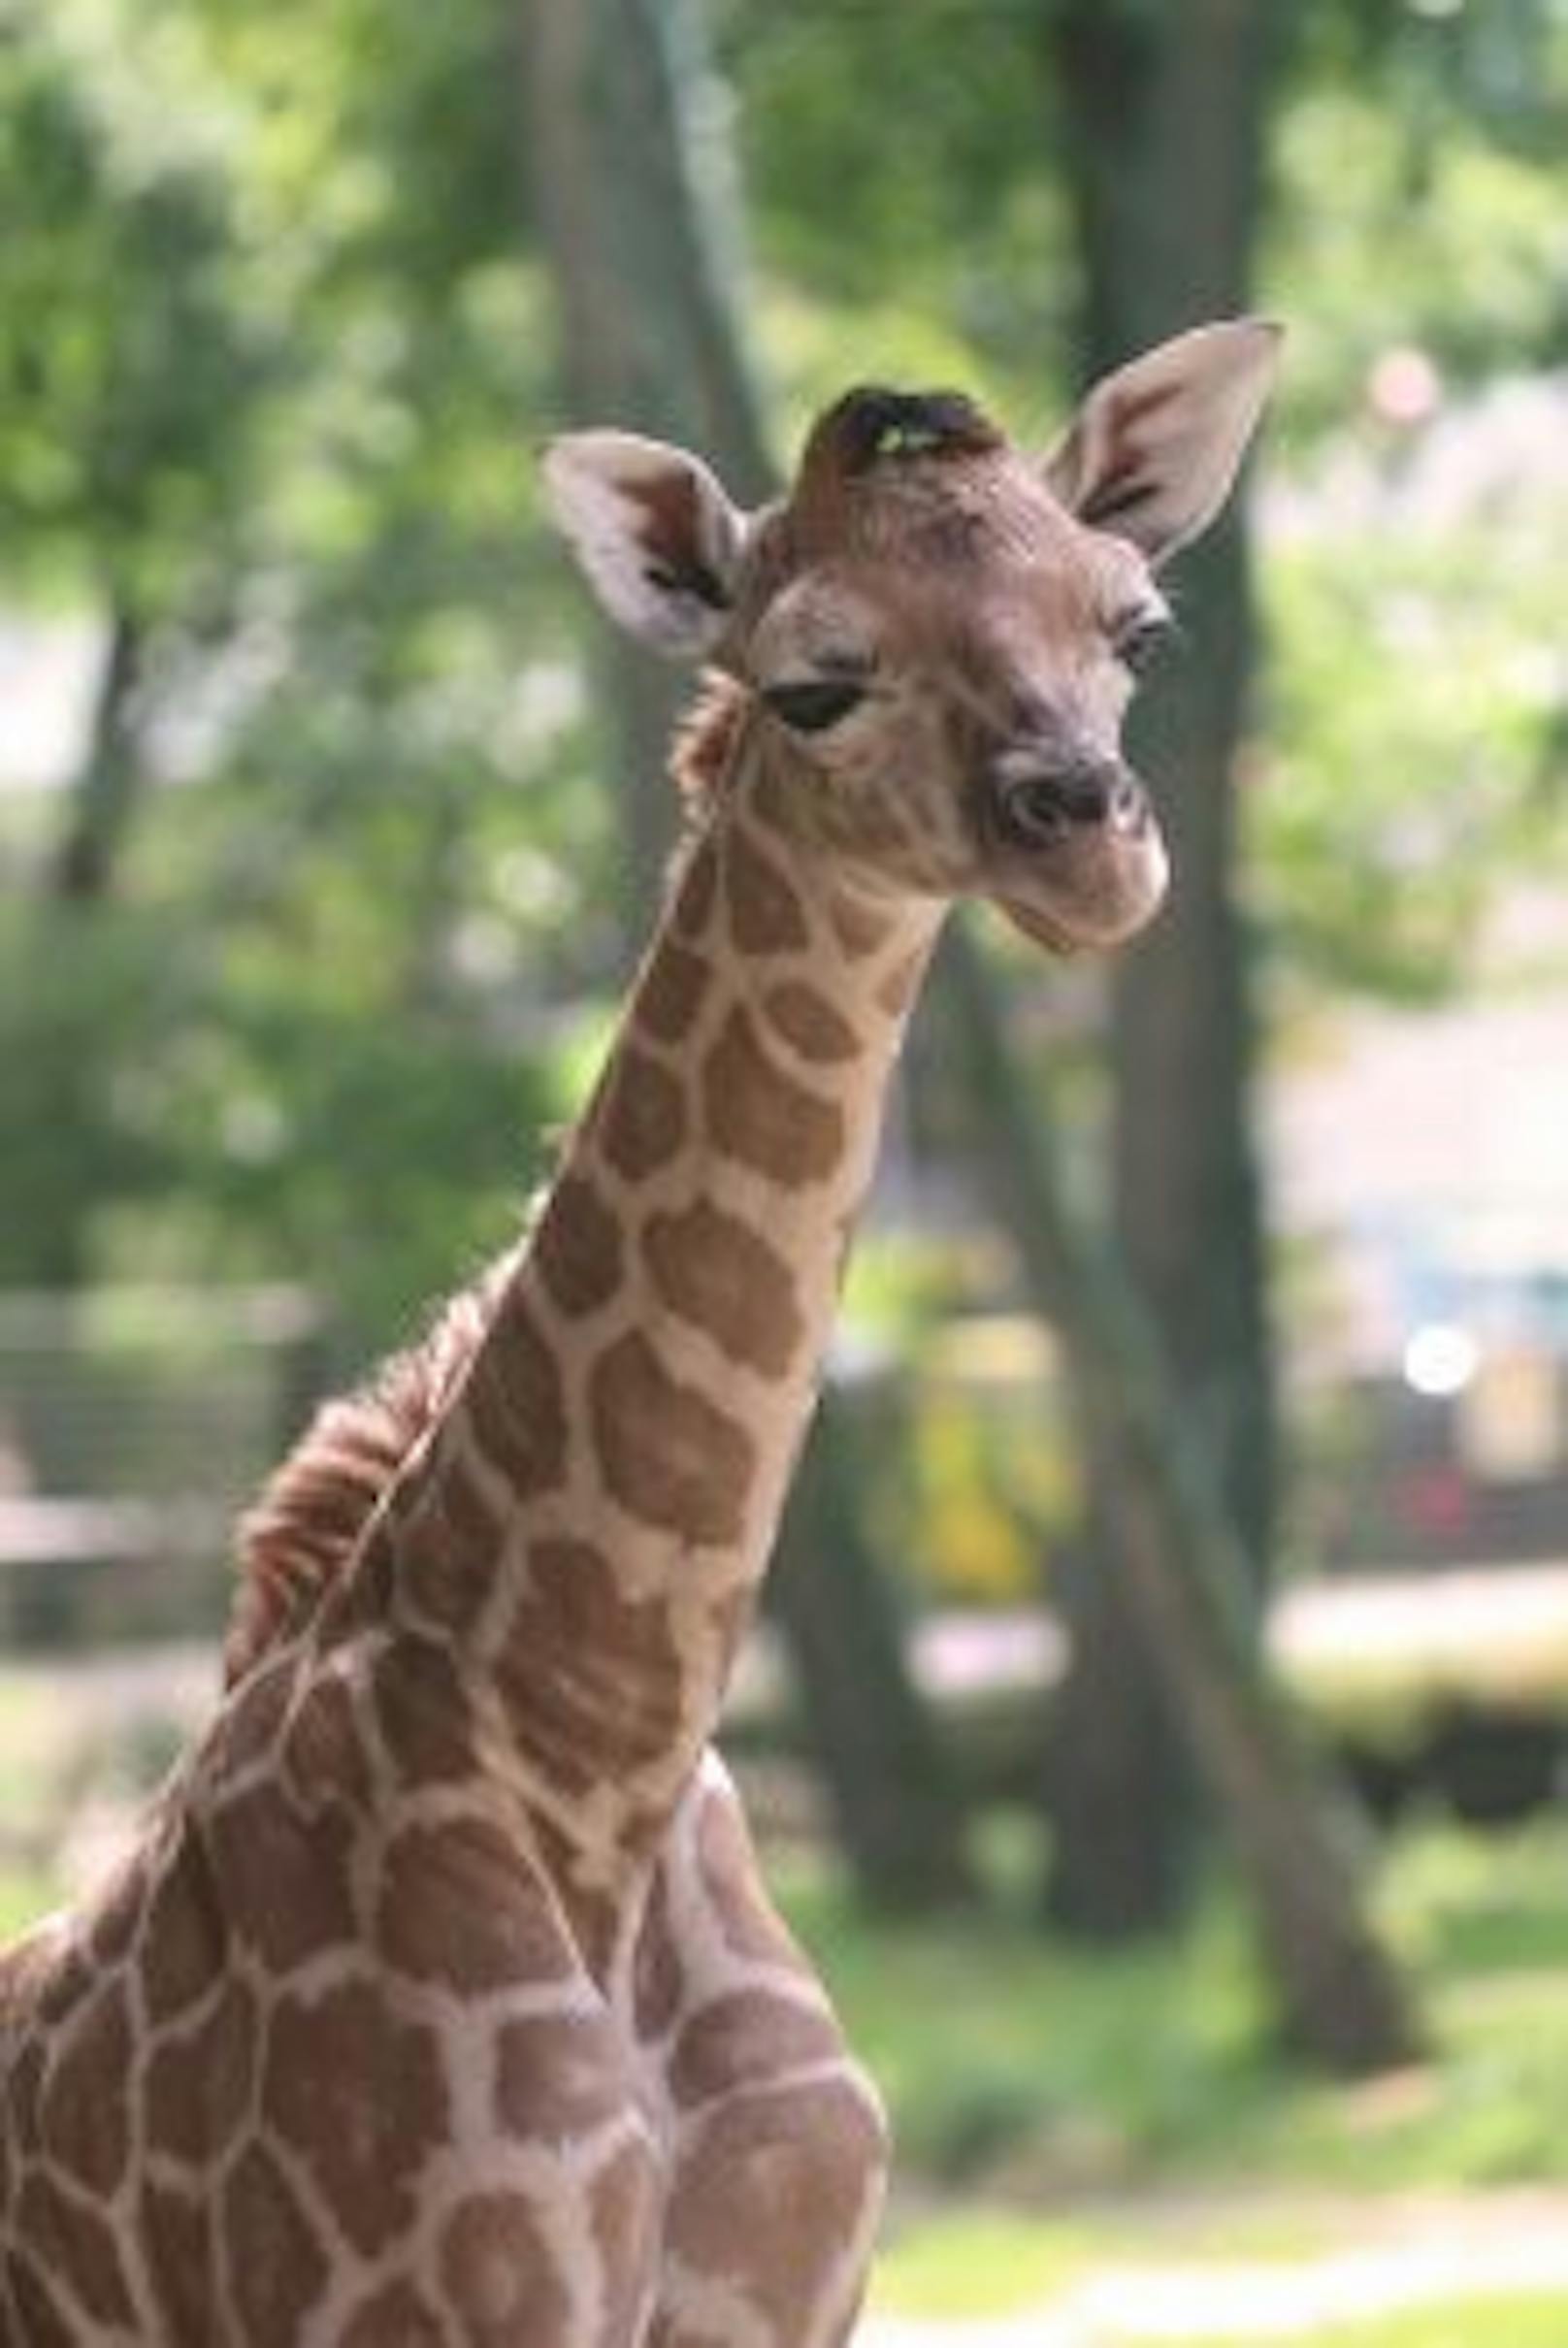 Bereits wenige Tage nach der Geburt unternimmt der Giraffen-Bub erste Ausflüge durchs Gehege.